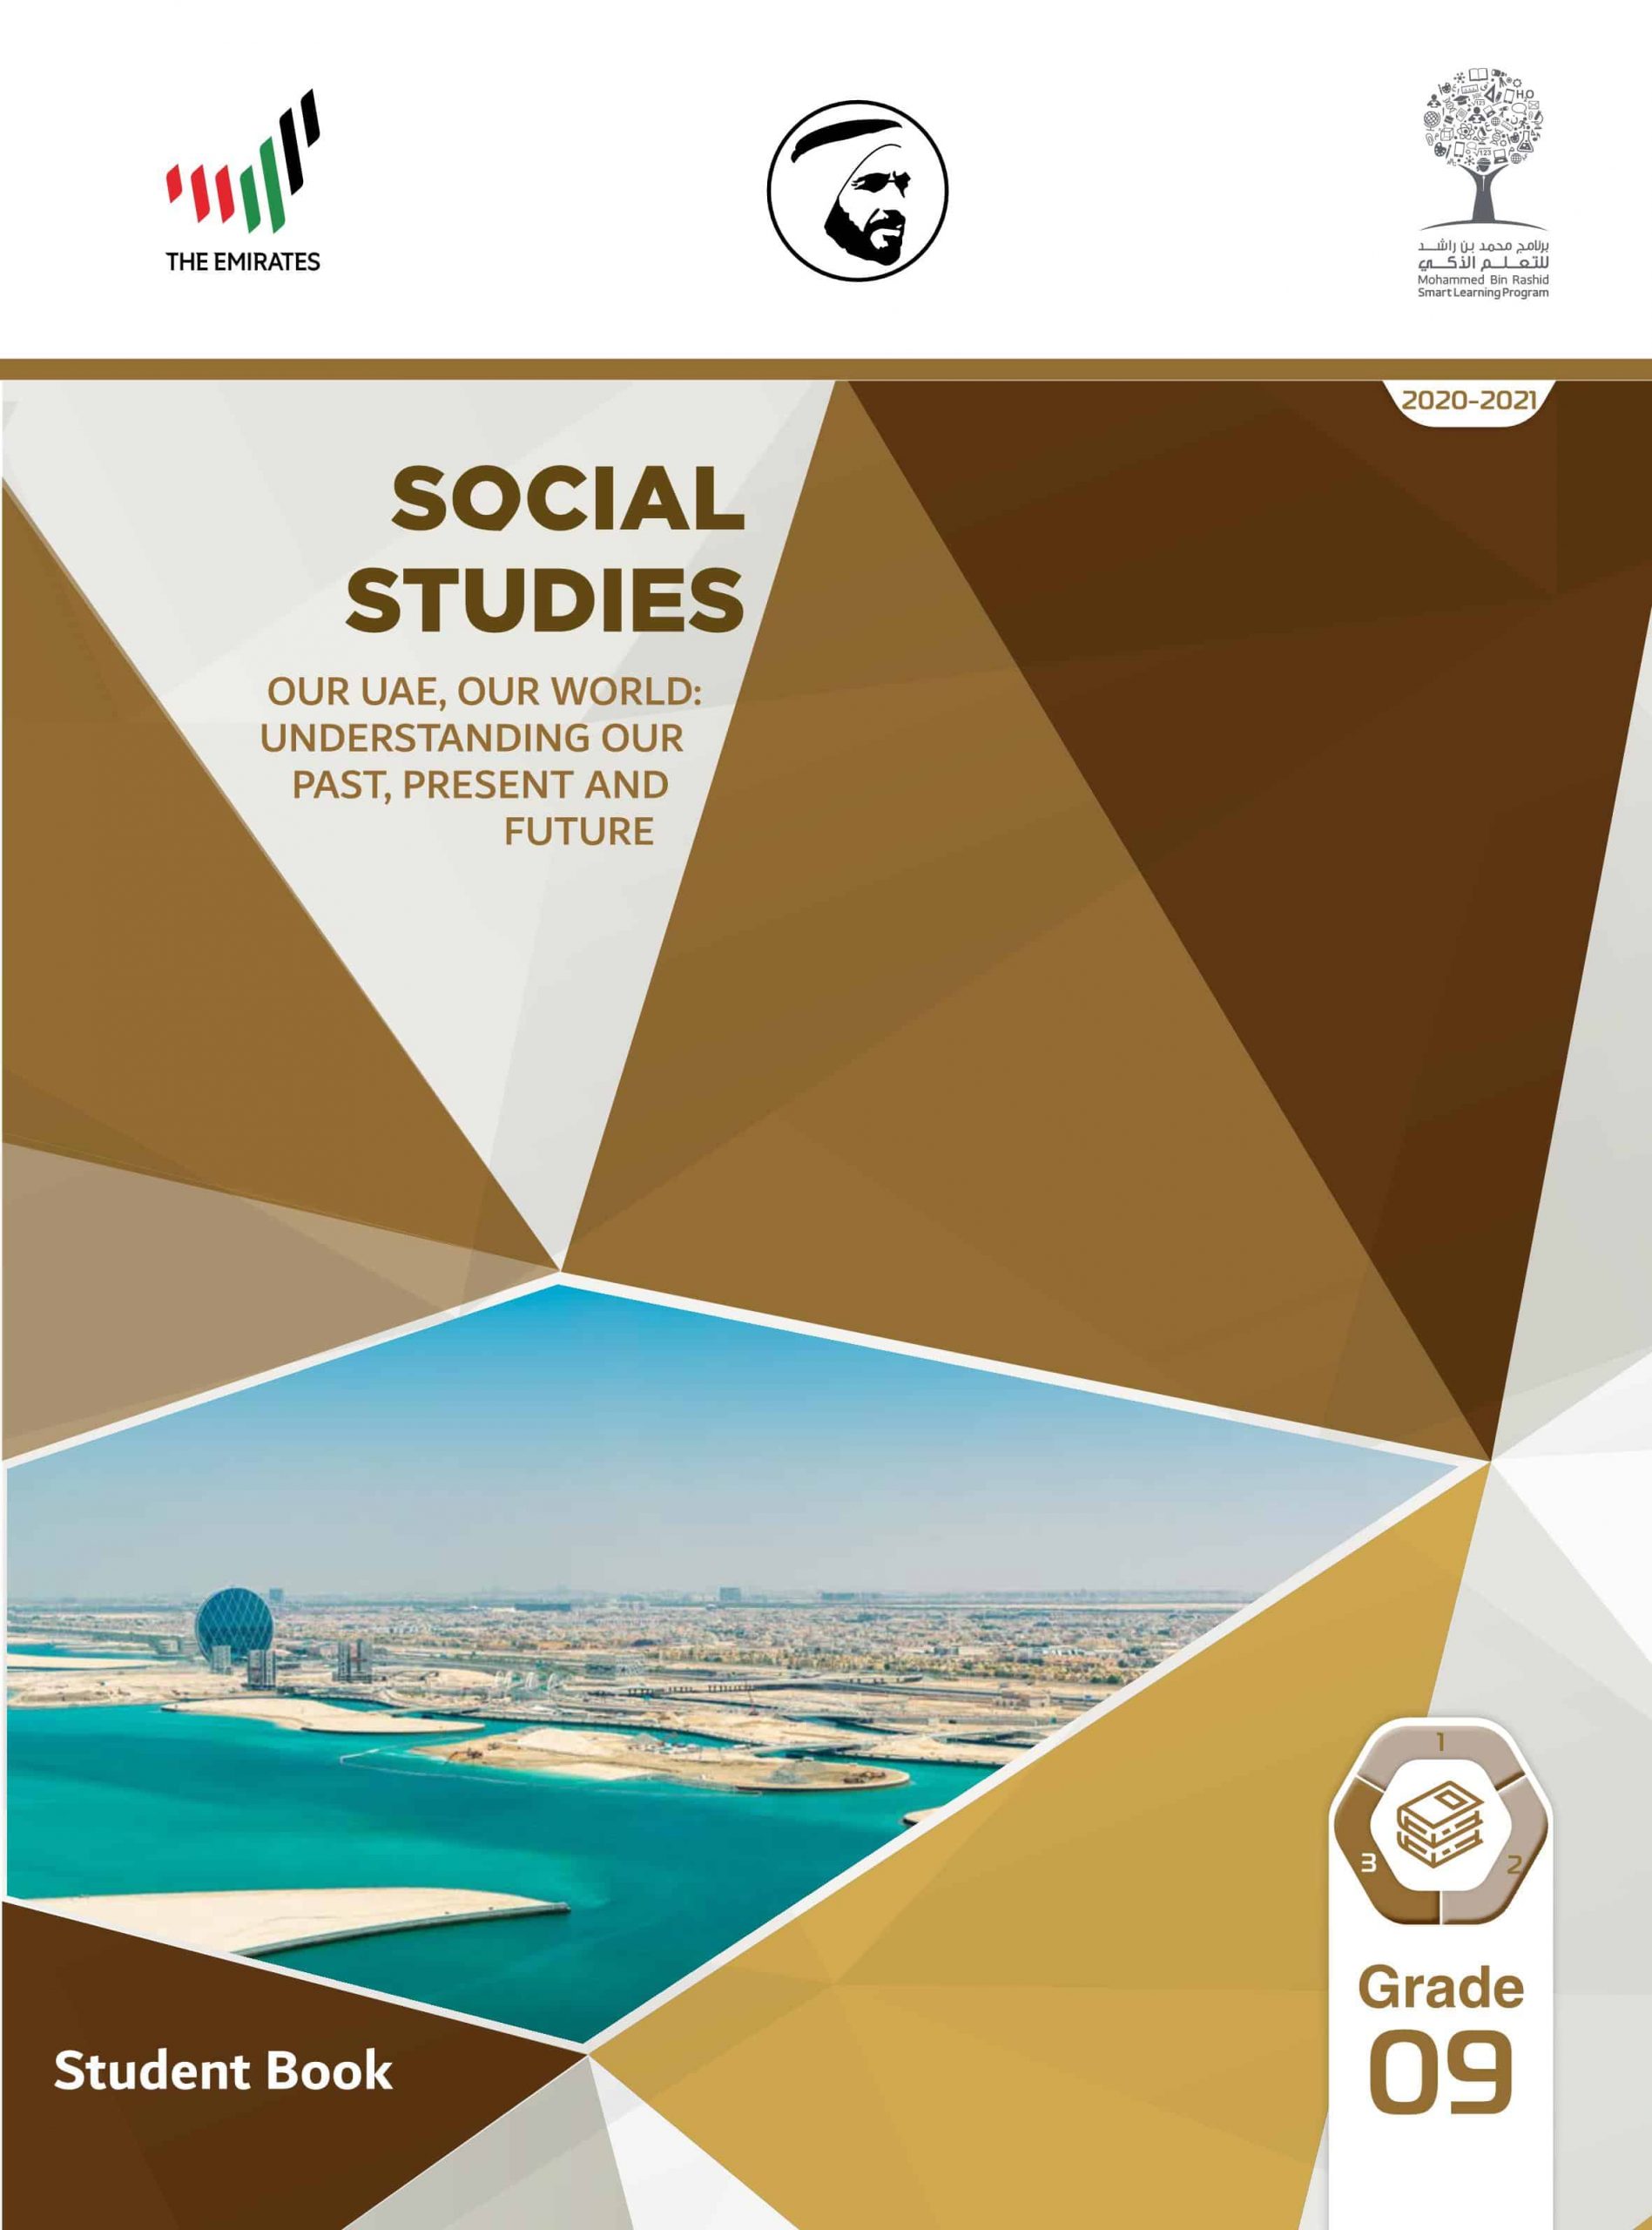 كتاب الطالب بالإنجليزي الفصل الدراسي الثالث 2020-2021 الصف التاسع مادة الدراسات الإجتماعية والتربية الوطنية